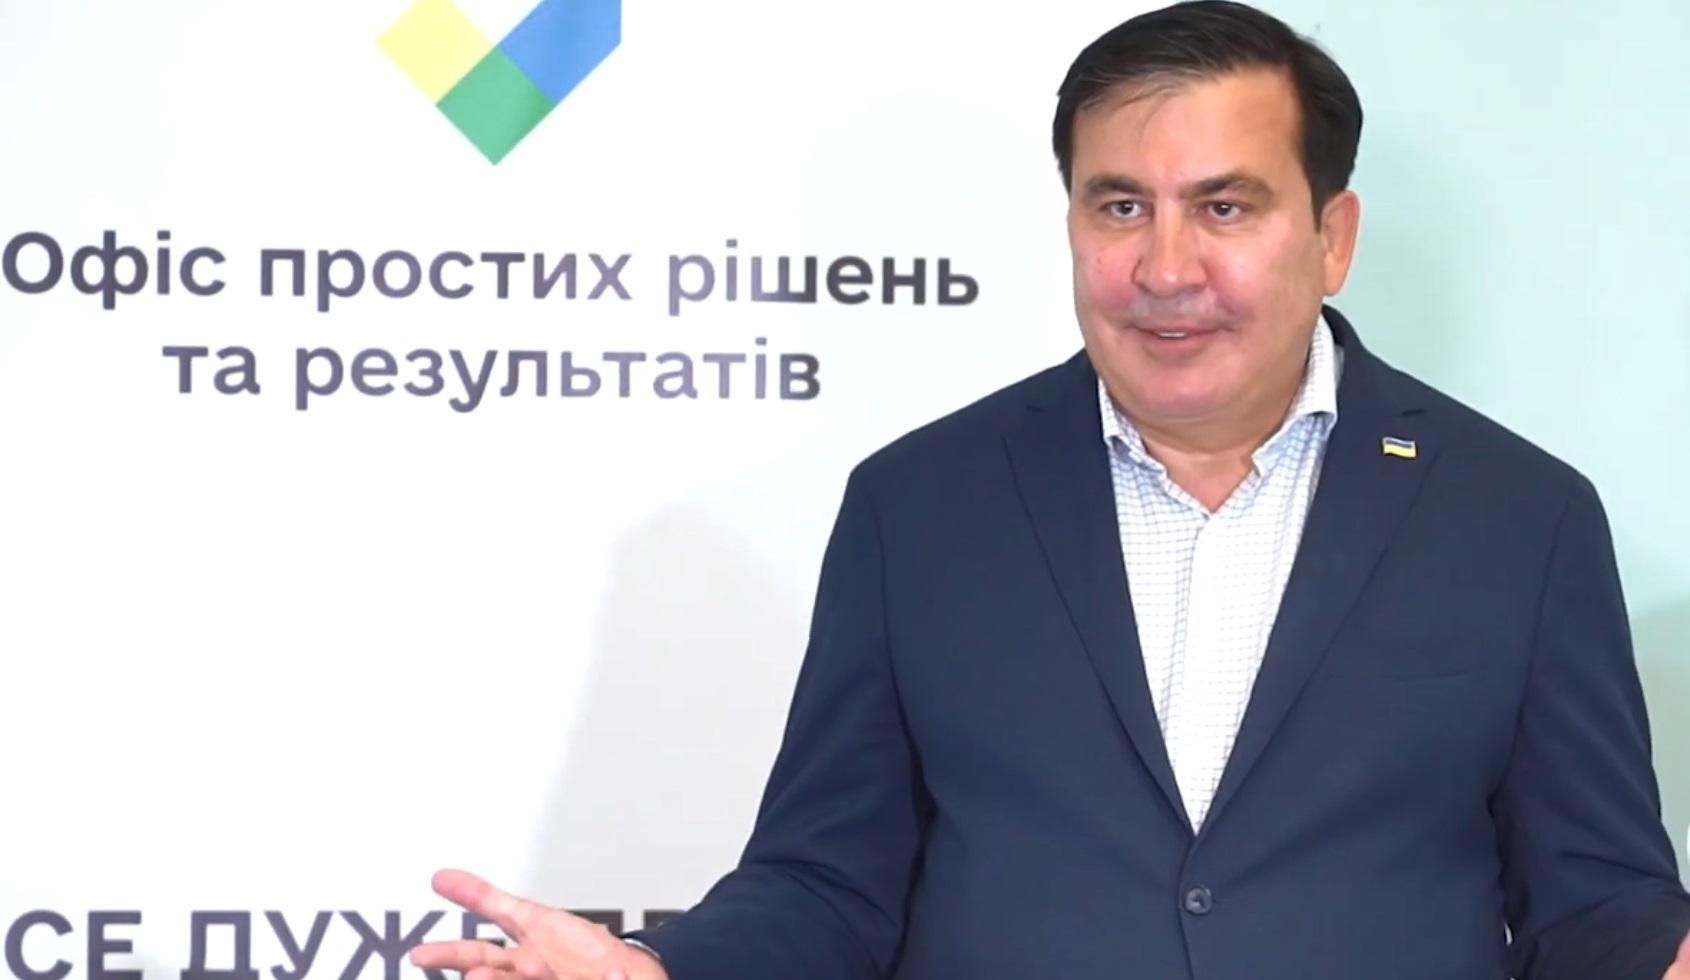 Саакашвили открыл в Одессе "Офис простых решений и результатов"